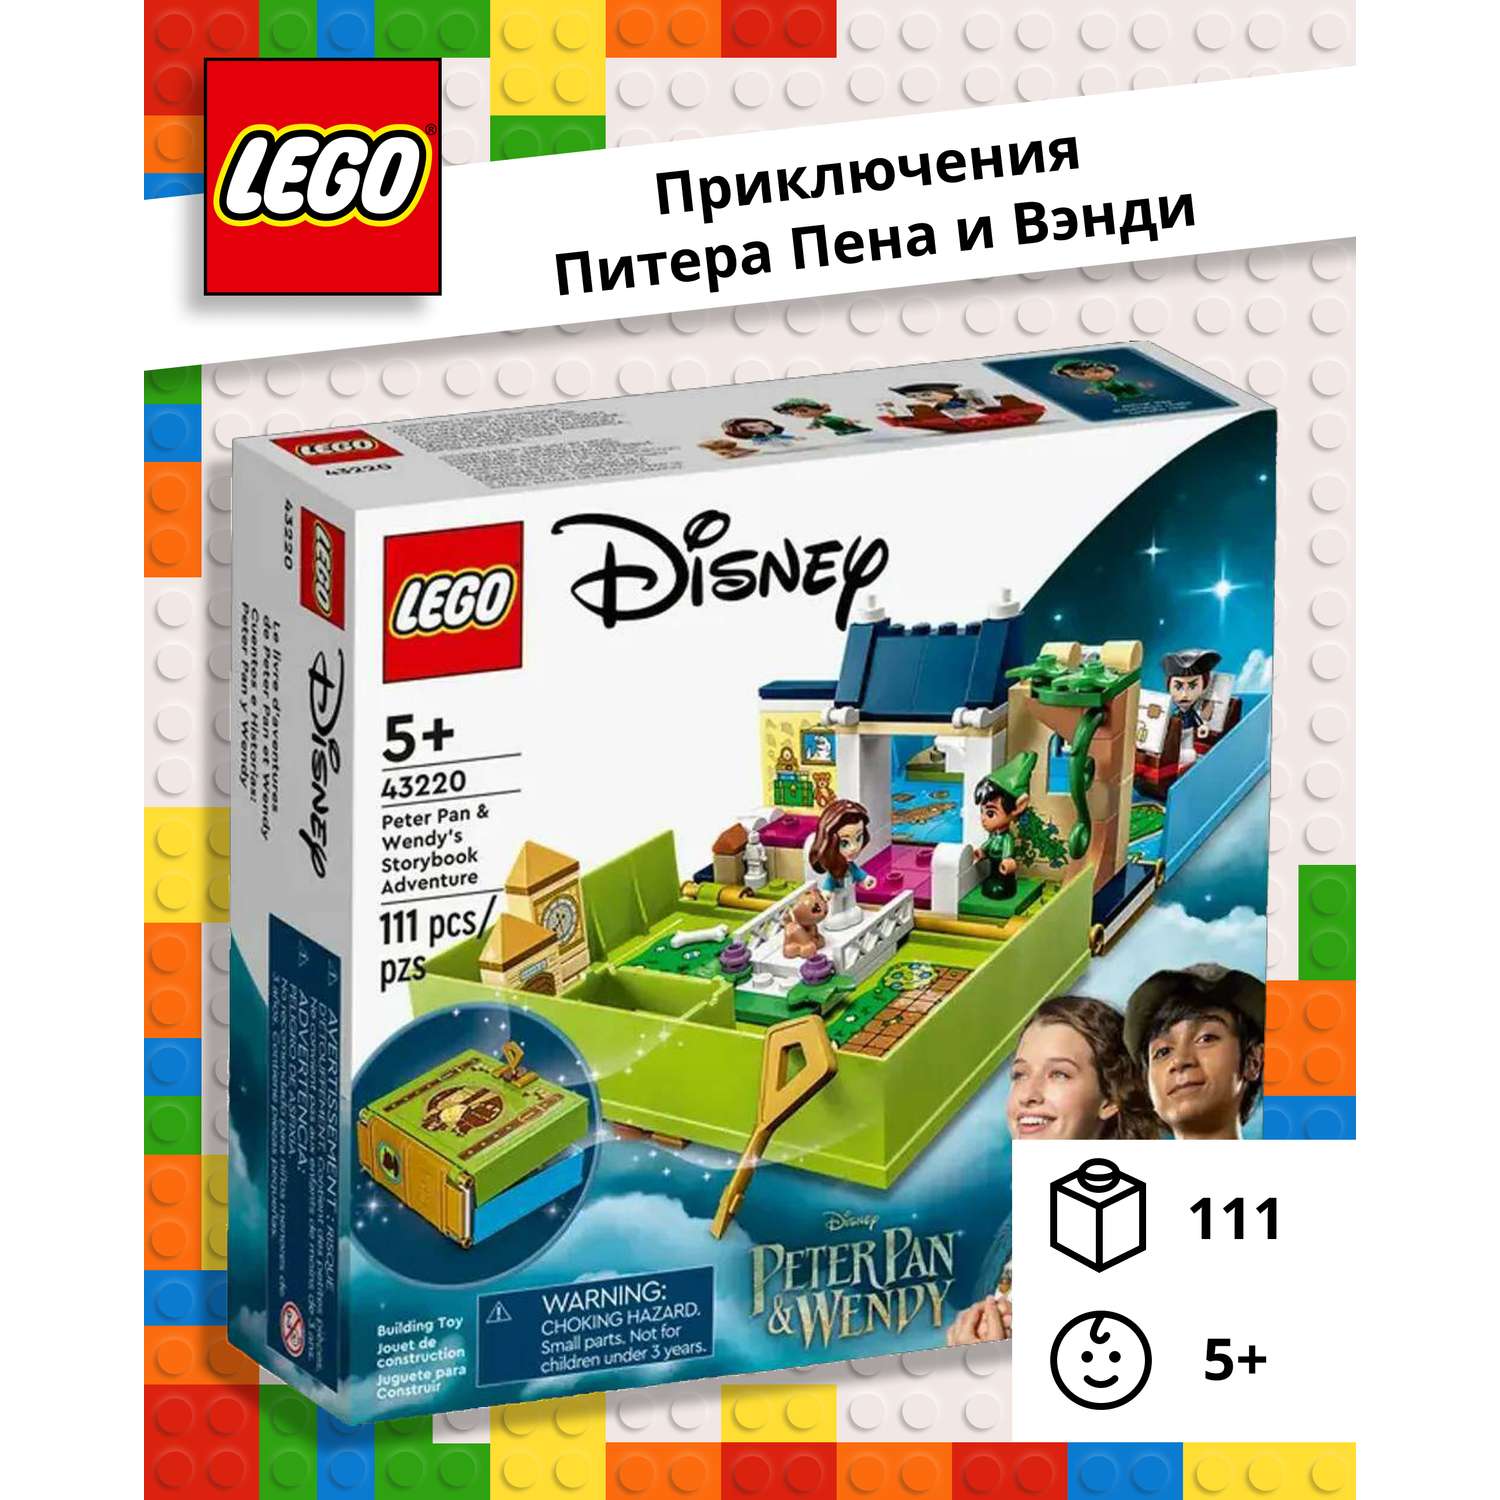 Конструктор LEGO Disney Princess «Книга приключений Питера Пена и Венди» 111 деталей 43220 - фото 1